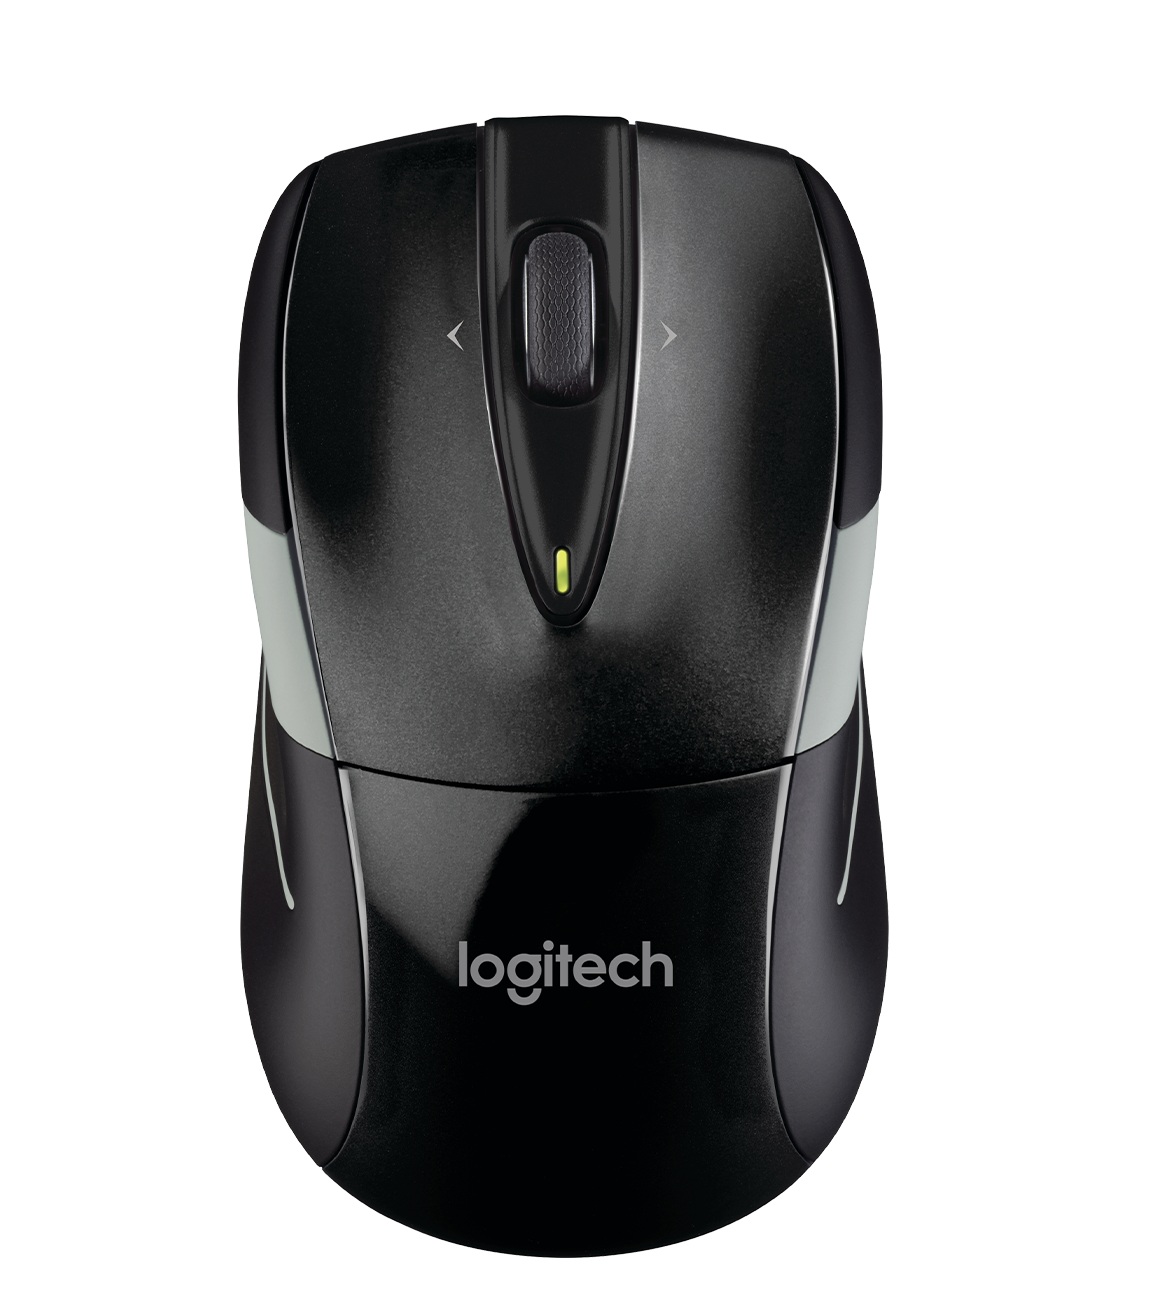 ماوس لاجیتک Logitech M525 Wireless Mouse